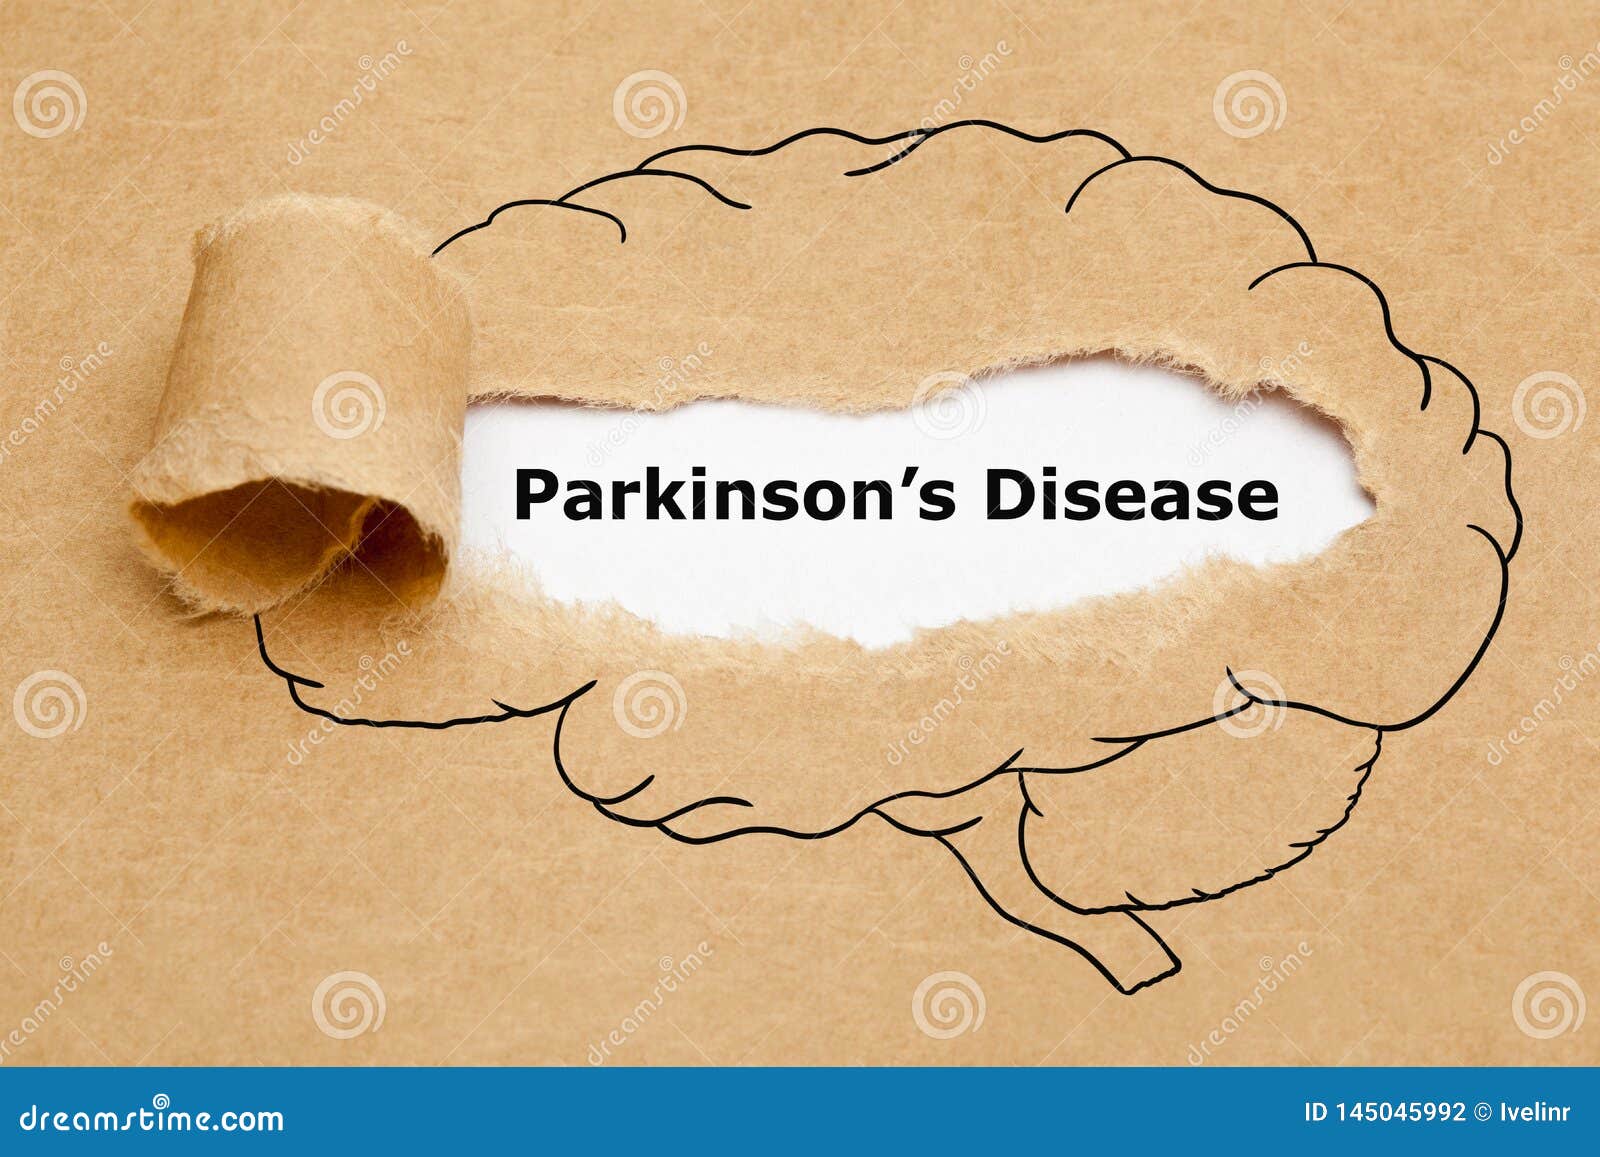 parkinsons disease torn paper concept